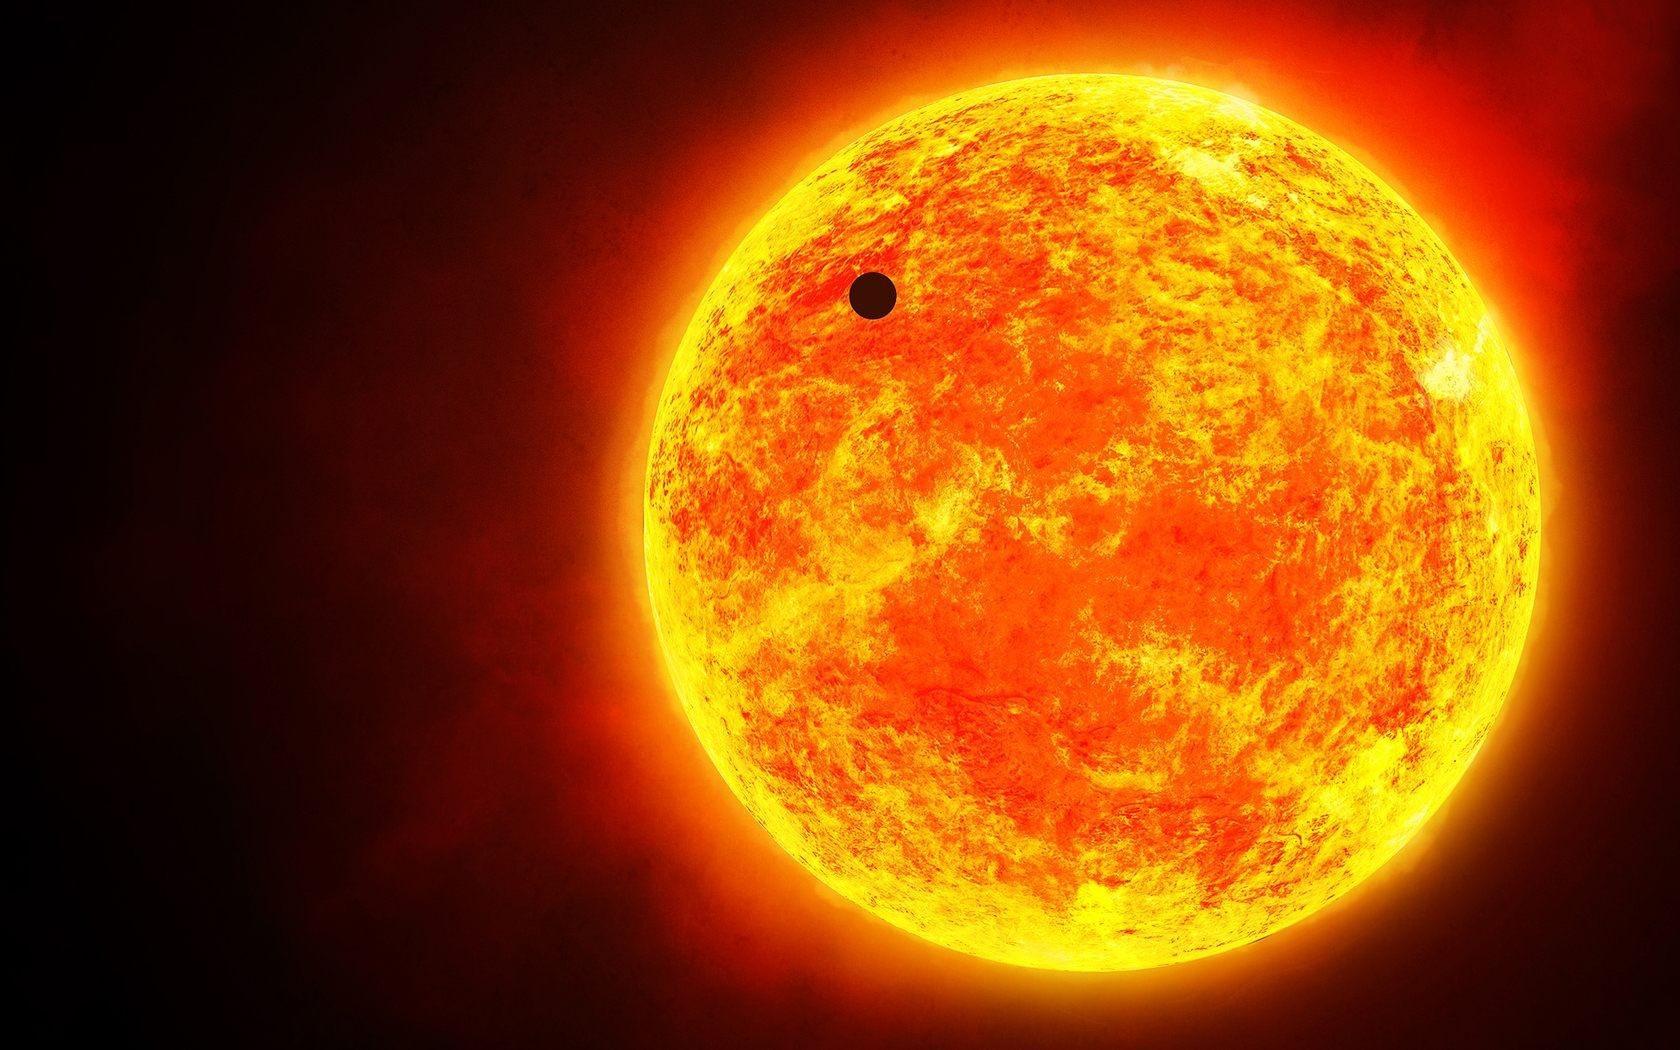 क्यों सूरज पर काले तिल की तरह दिखता है बुधग्रह